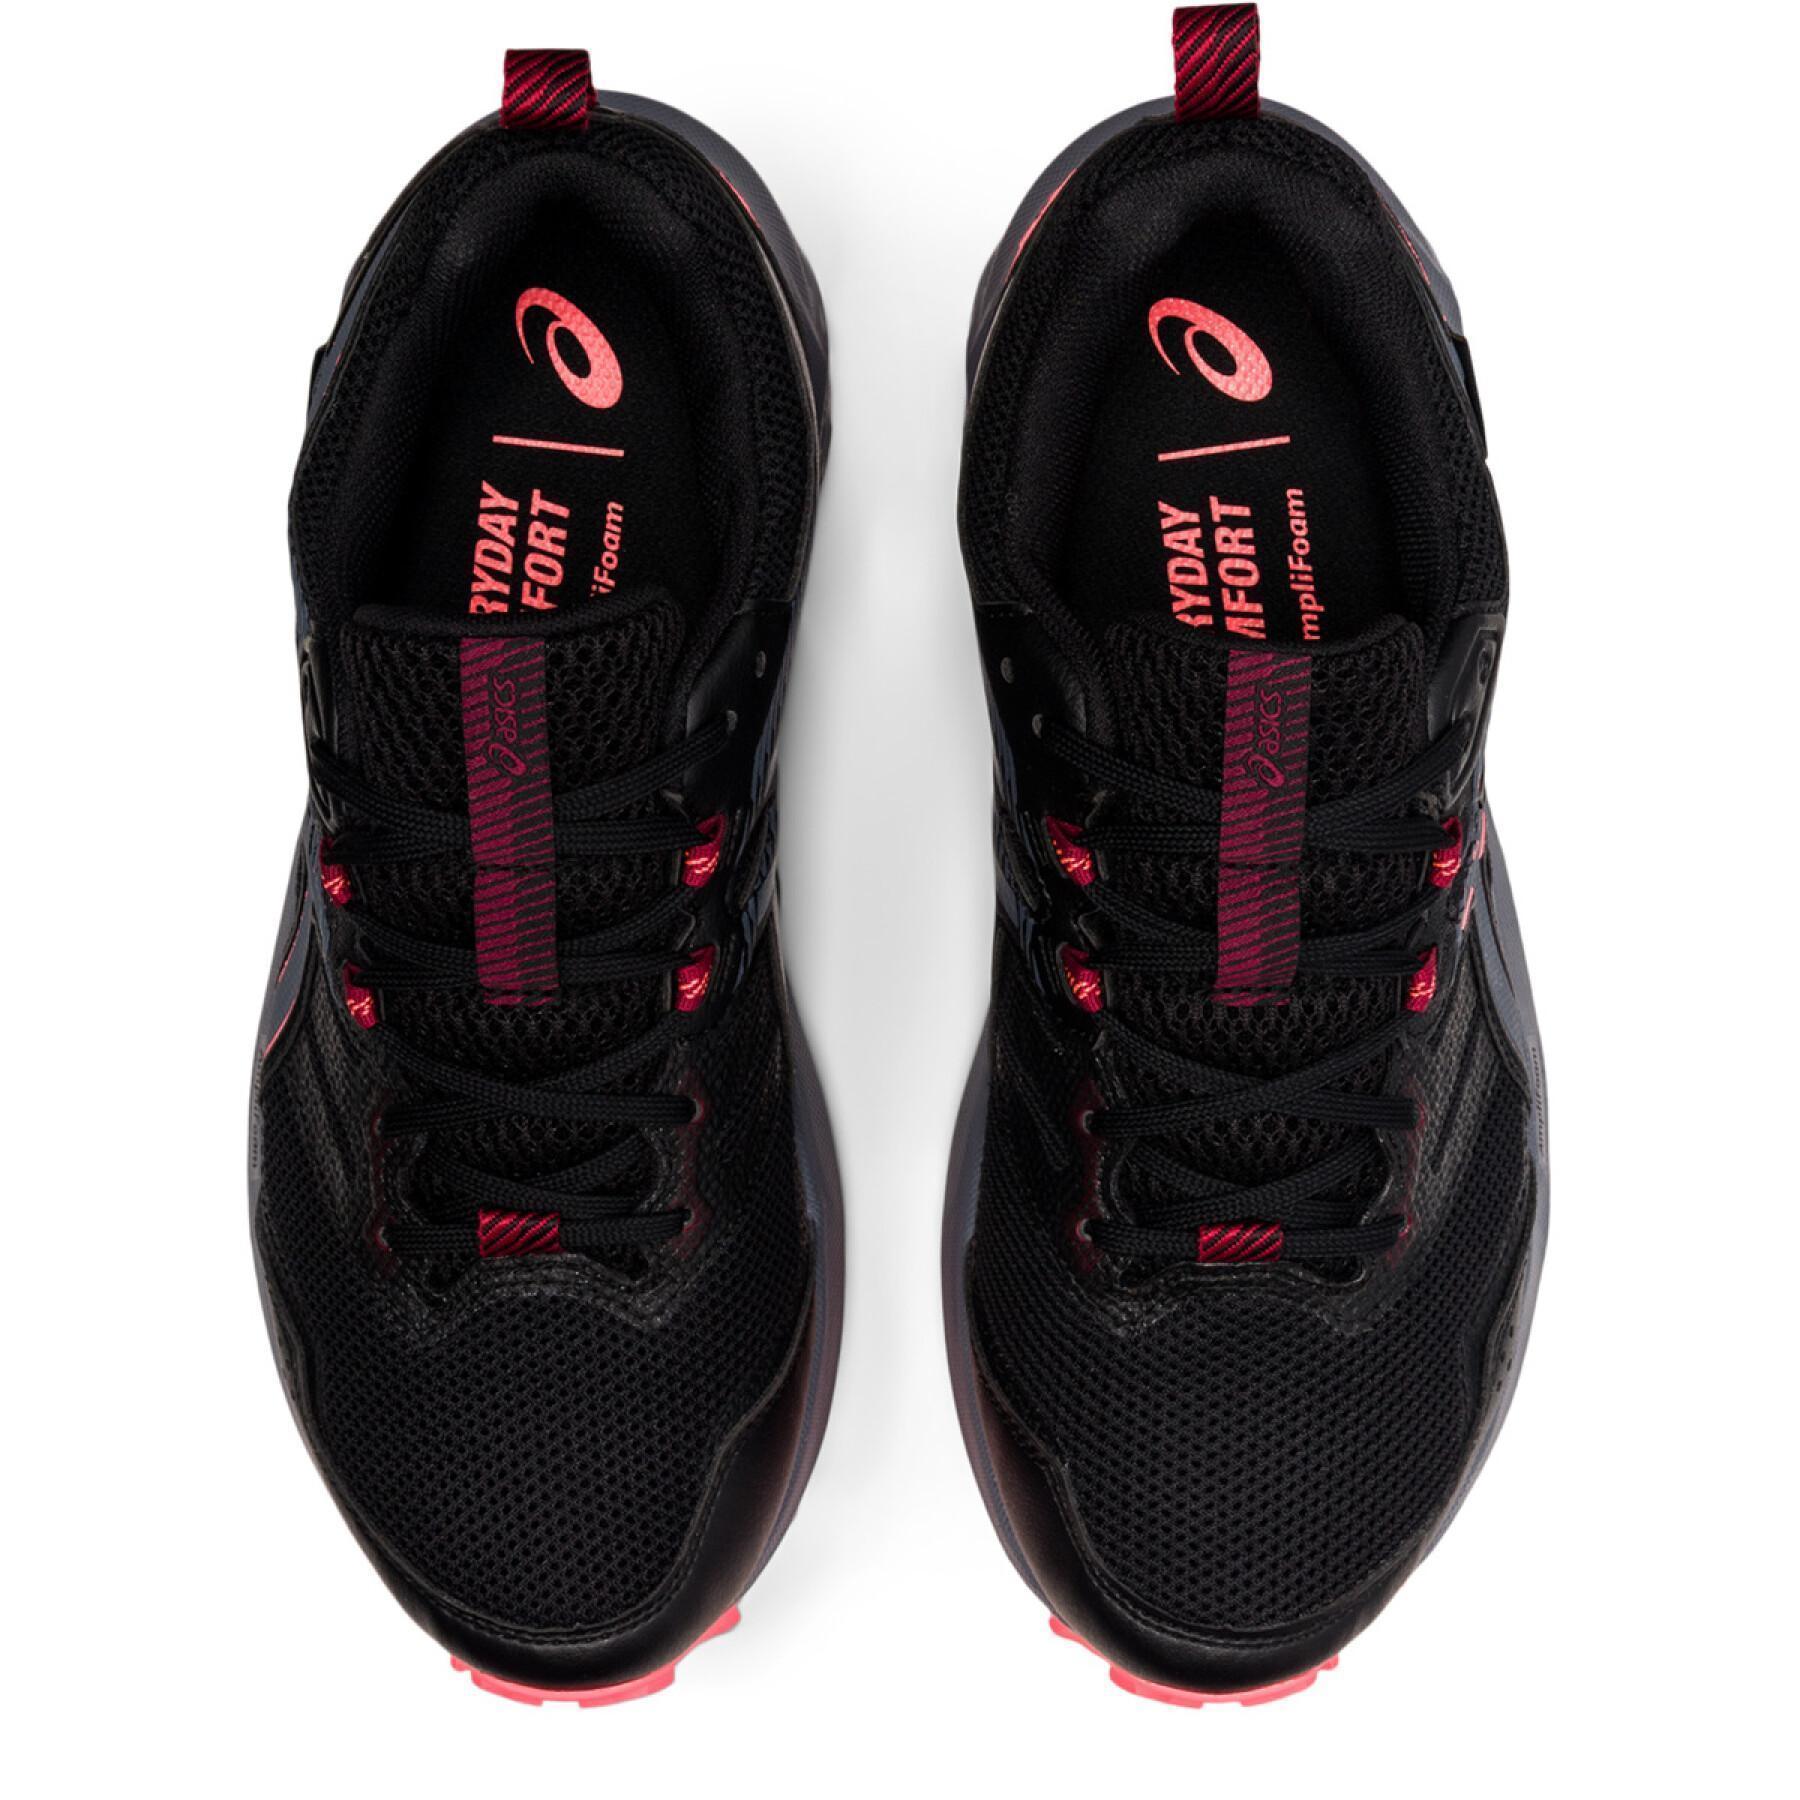 Trailrunning-Schuhe für Frauen Asics Gel-Sonoma 6 G-Tx